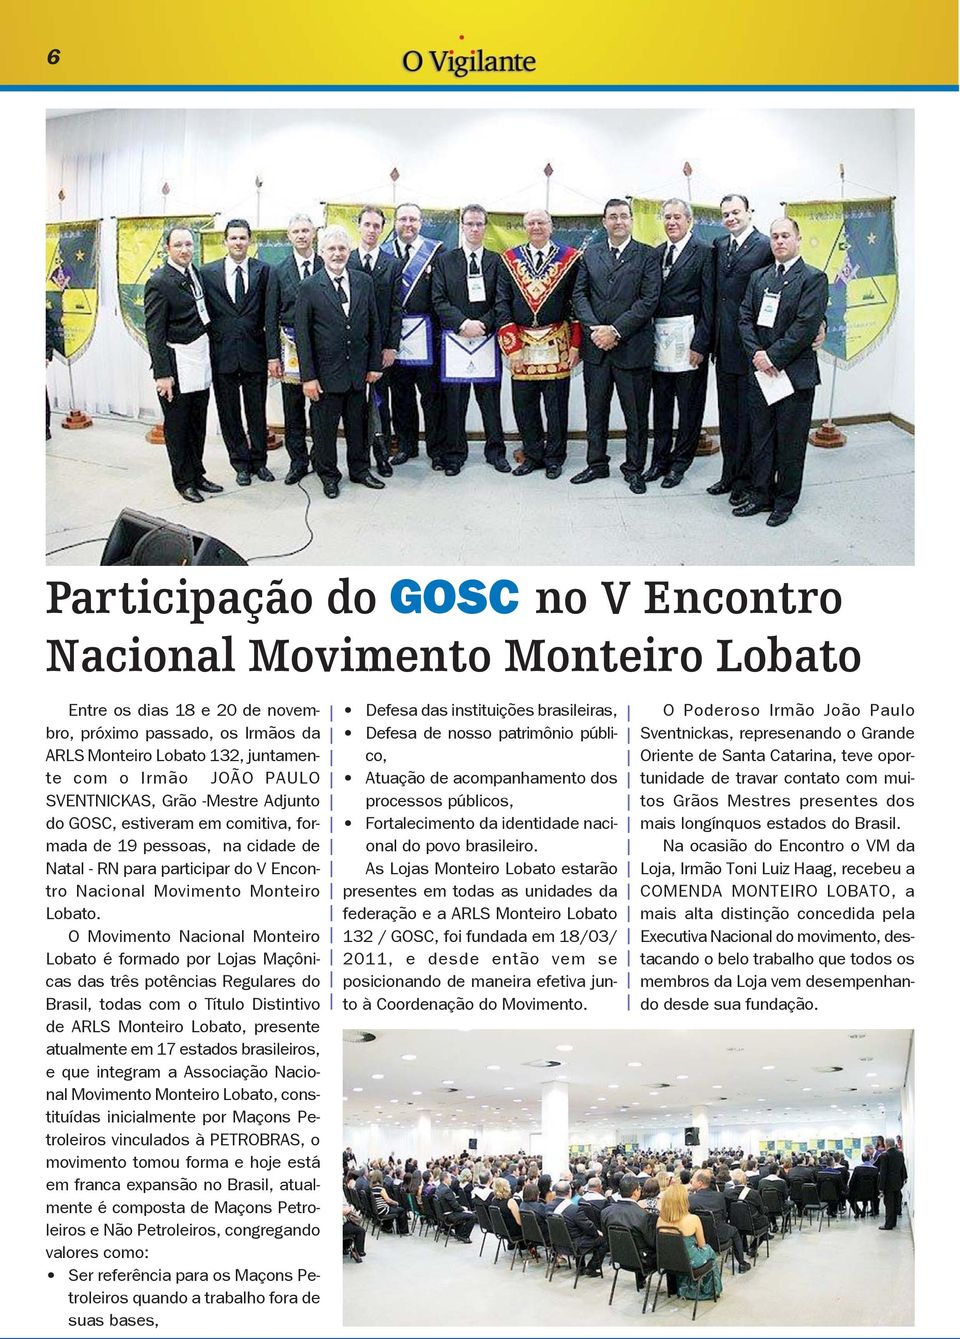 O Movimento Nacional Monteiro Lobato é formado por Lojas Maçônicas das três potências Regulares do Brasil, todas com o Título Distintivo de ARLS Monteiro Lobato, presente atualmente em 17 estados